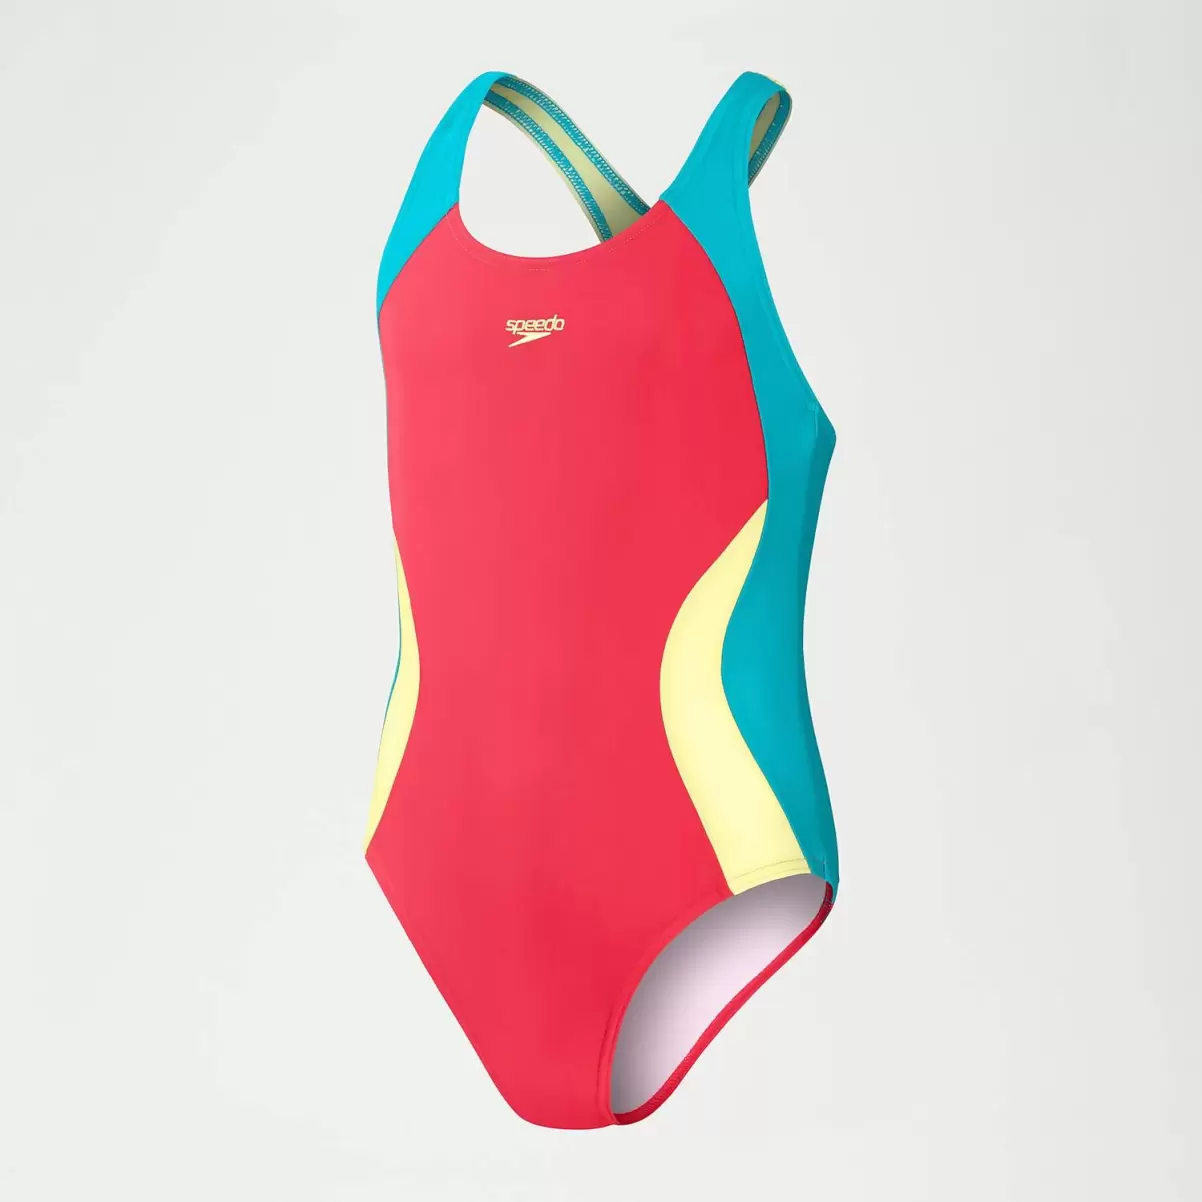 Kinder Speedo Farbblock Spiritback Badeanzug Für Mädchen Pink/Aqua Mädchen Bademode - 3